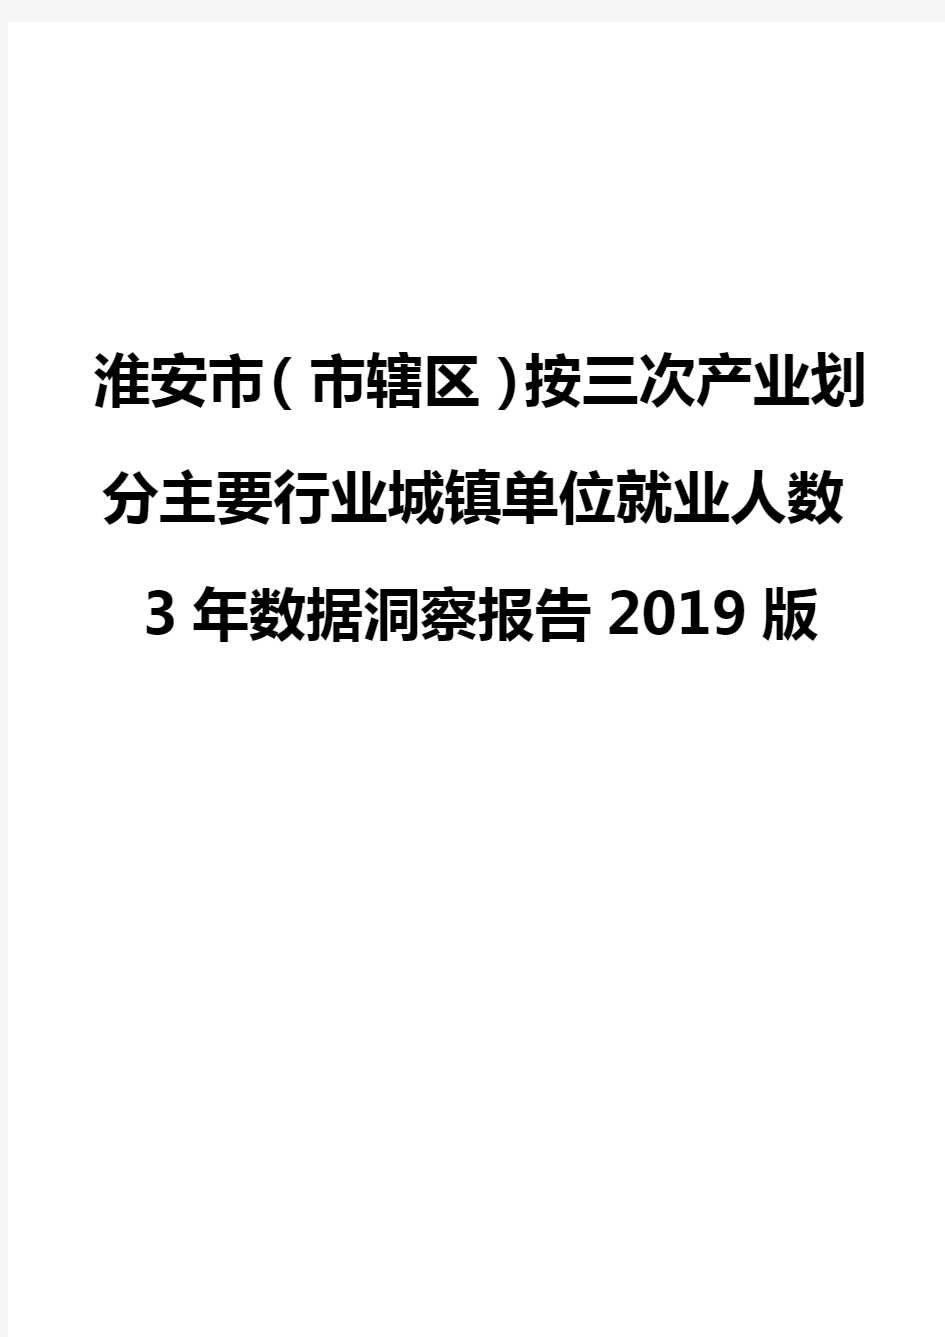 淮安市(市辖区)按三次产业划分主要行业城镇单位就业人数3年数据洞察报告2019版